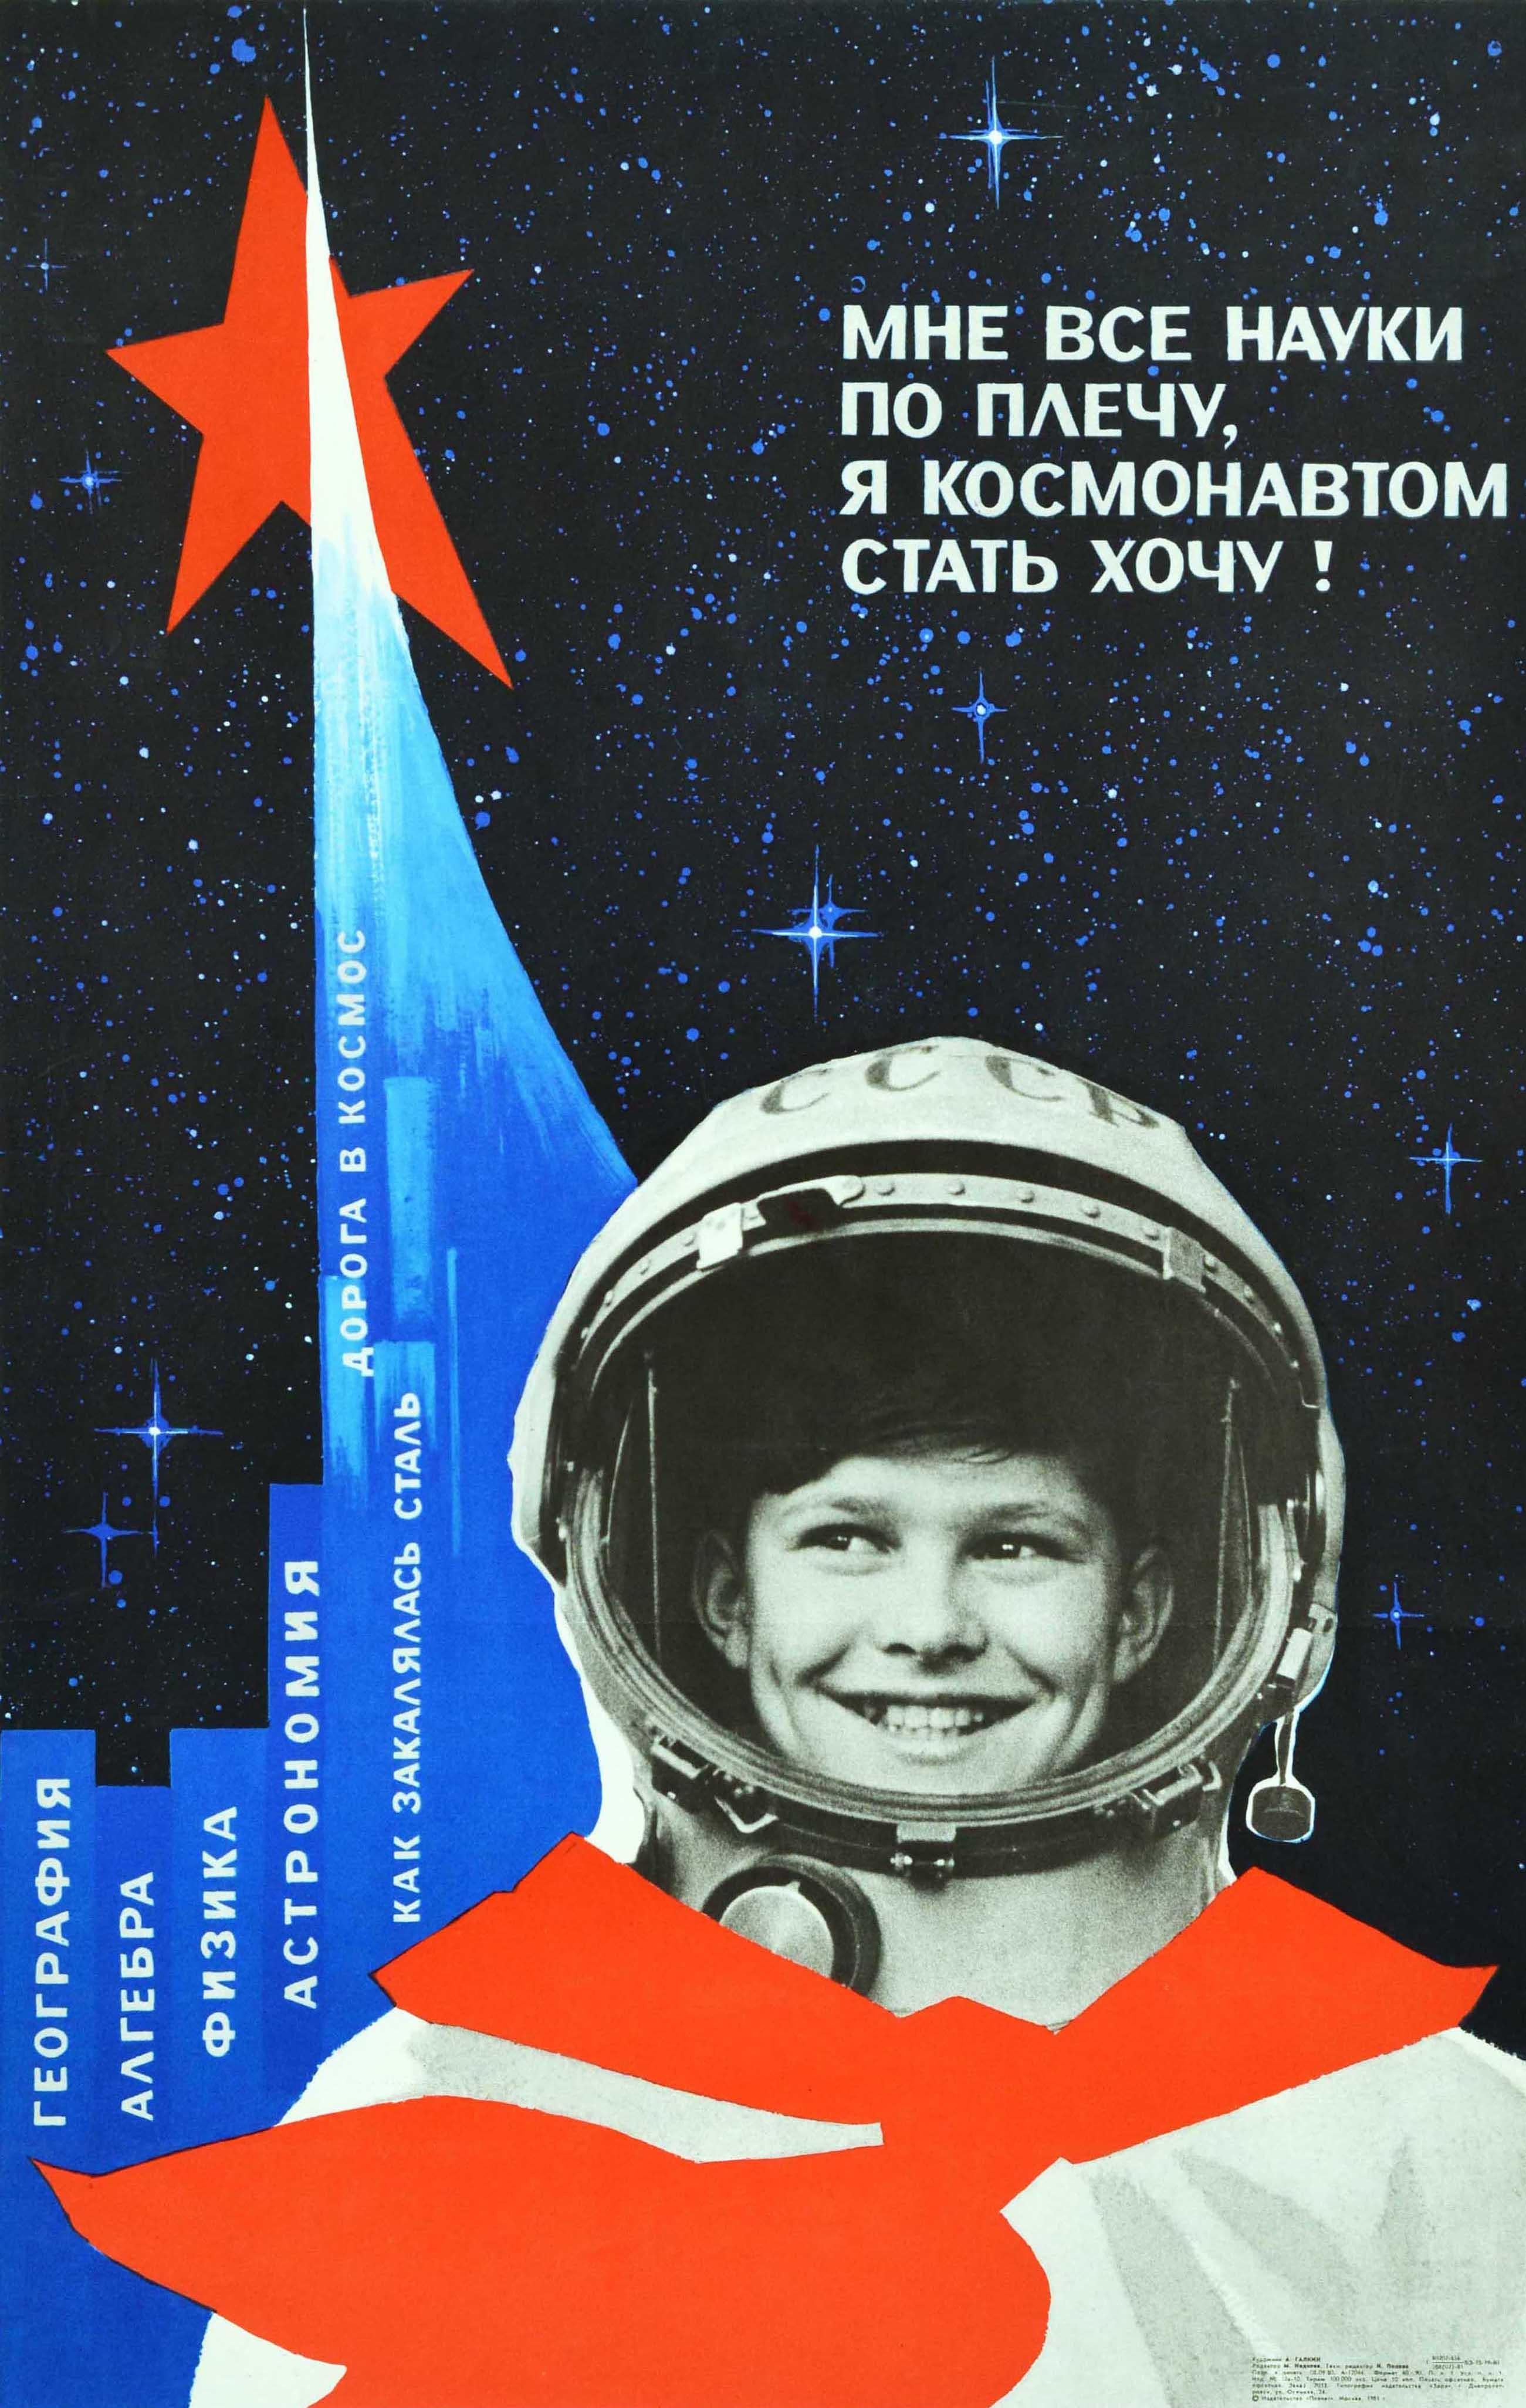 Galkin Print – Original-Vintage-Raumteiler-Poster, Sowjetische Schule, Junge Cosmonaut, Wissenschaftsbildung, UdSSR